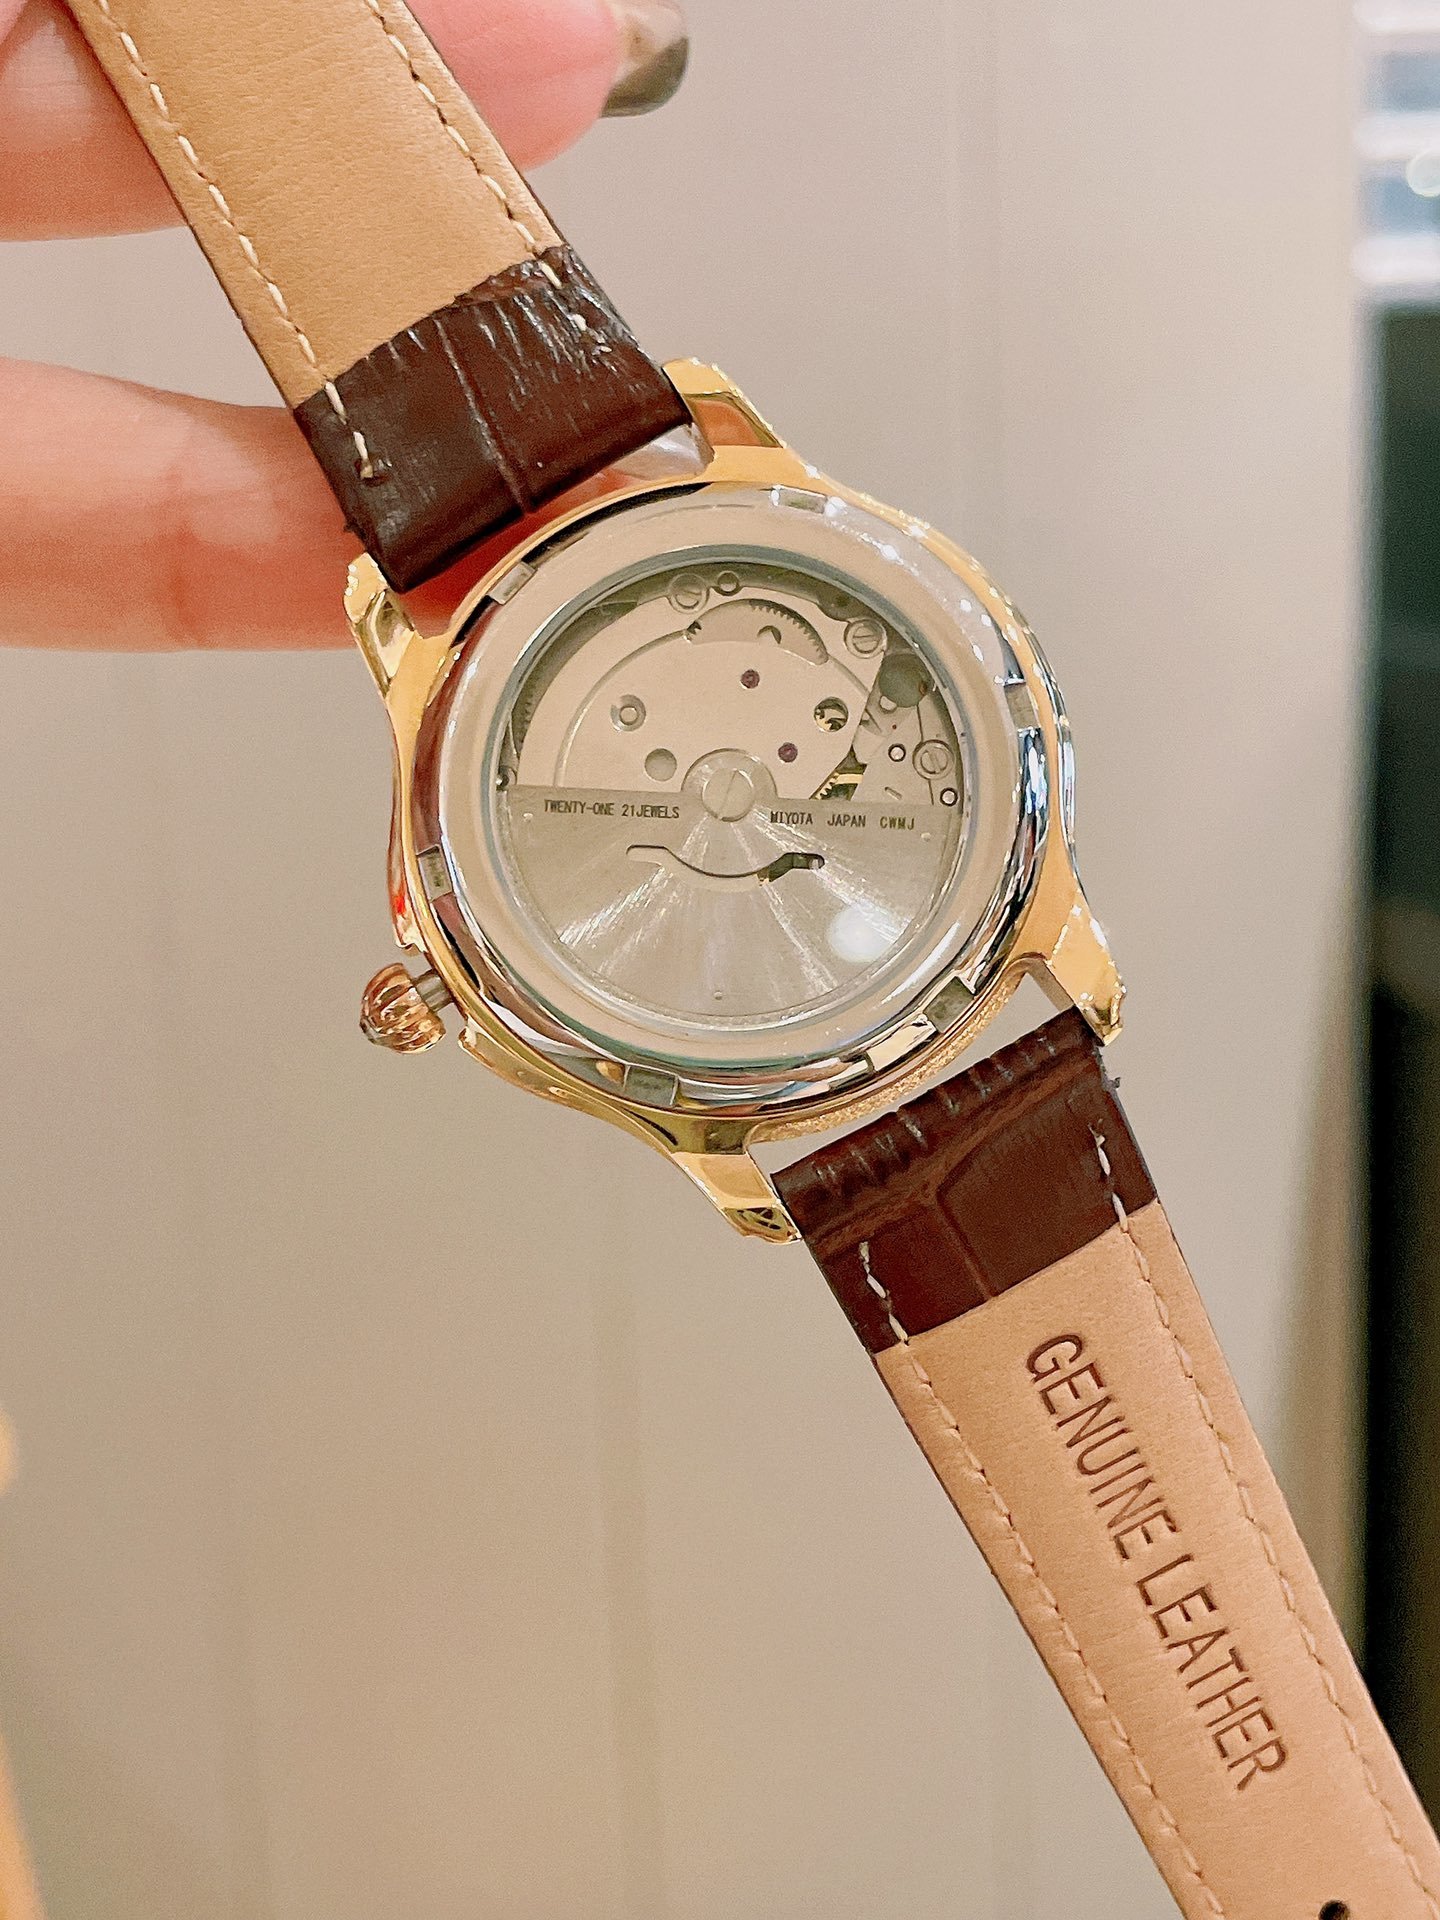 シャネル スーパーコピー 時計実物の写真 N品人気ブランド偽物腕時計代引き対応国内発送後払い安全必ず届くおすすめ口コミ優良サイト